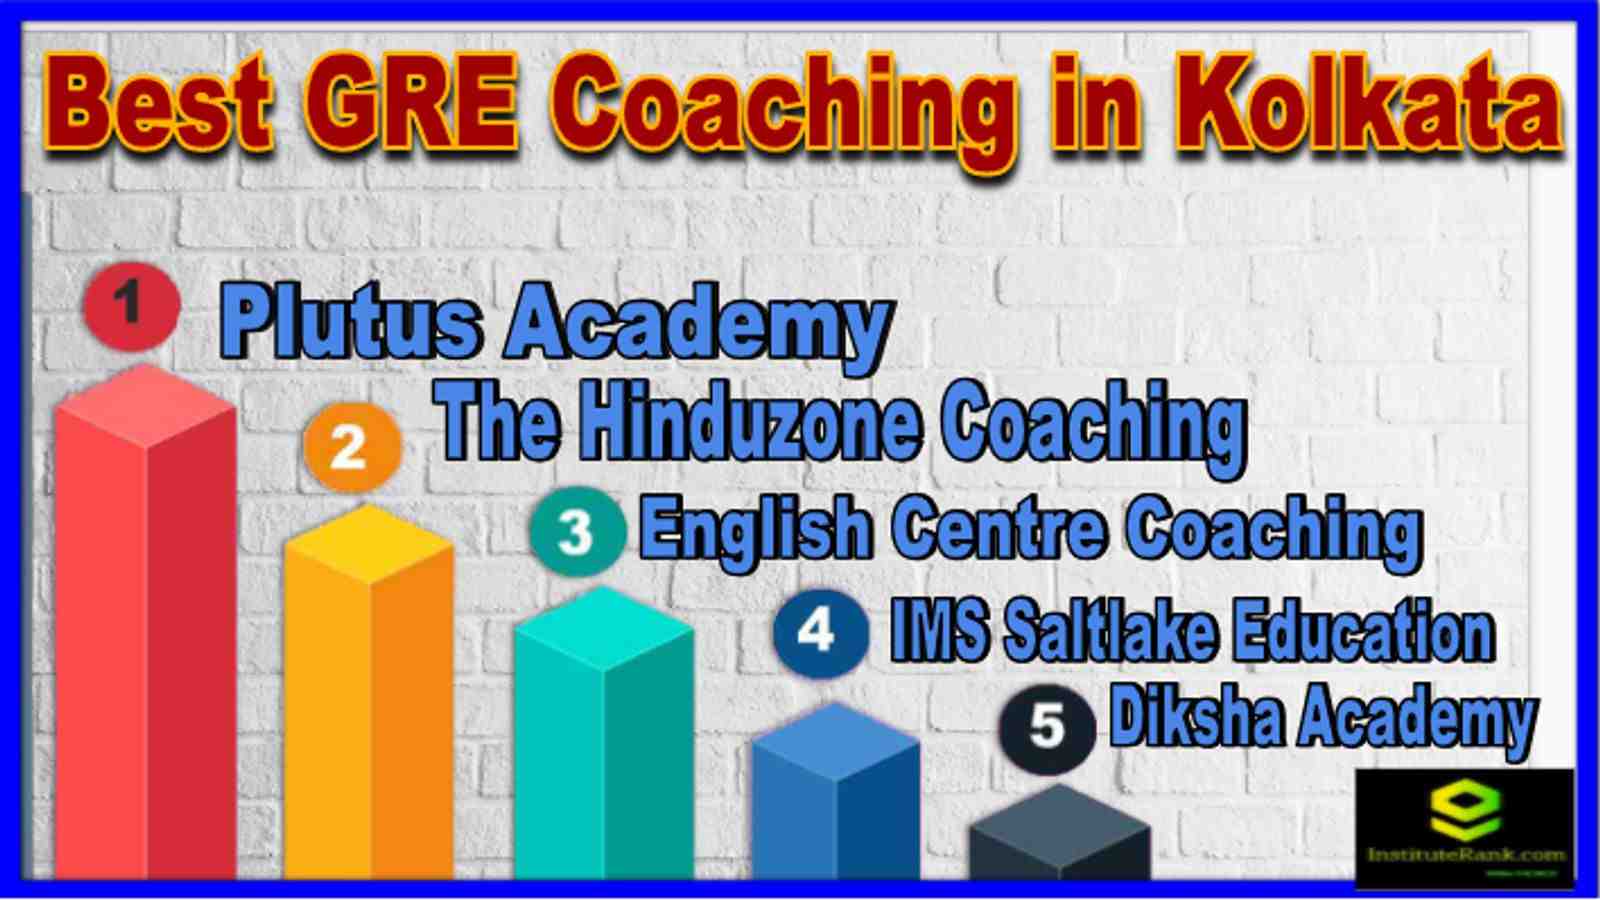 Top GME Coaching in Kolkata